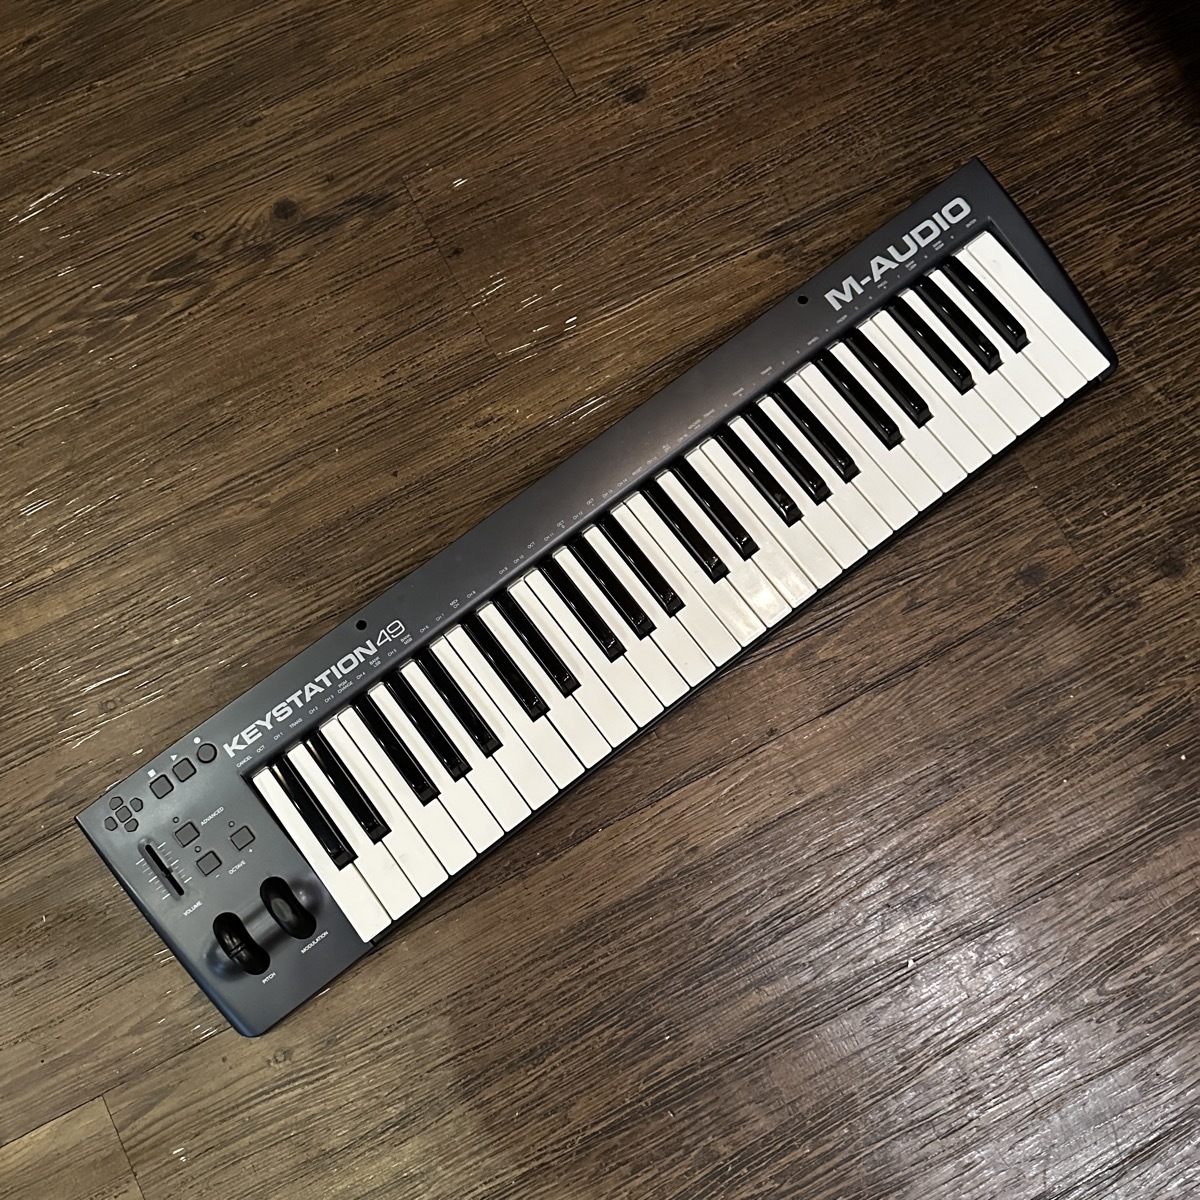 M-audio KEYSTATION 49 MIDI Keyboard エムオーディオ キーボード -GrunSound-x941-